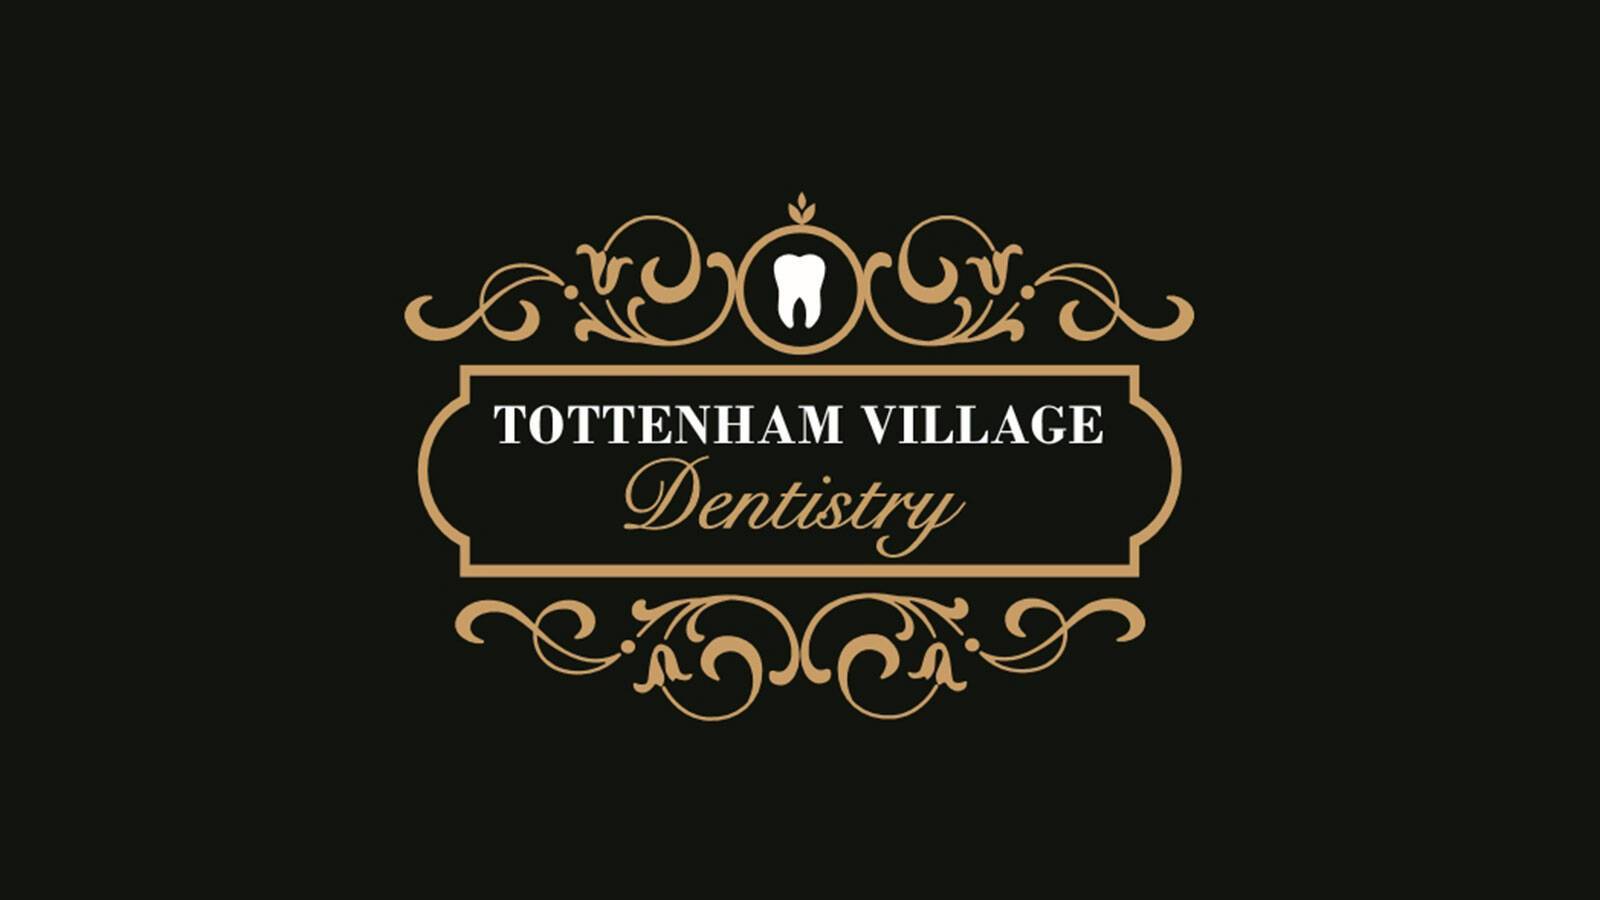 Tottenham Village Dentistry